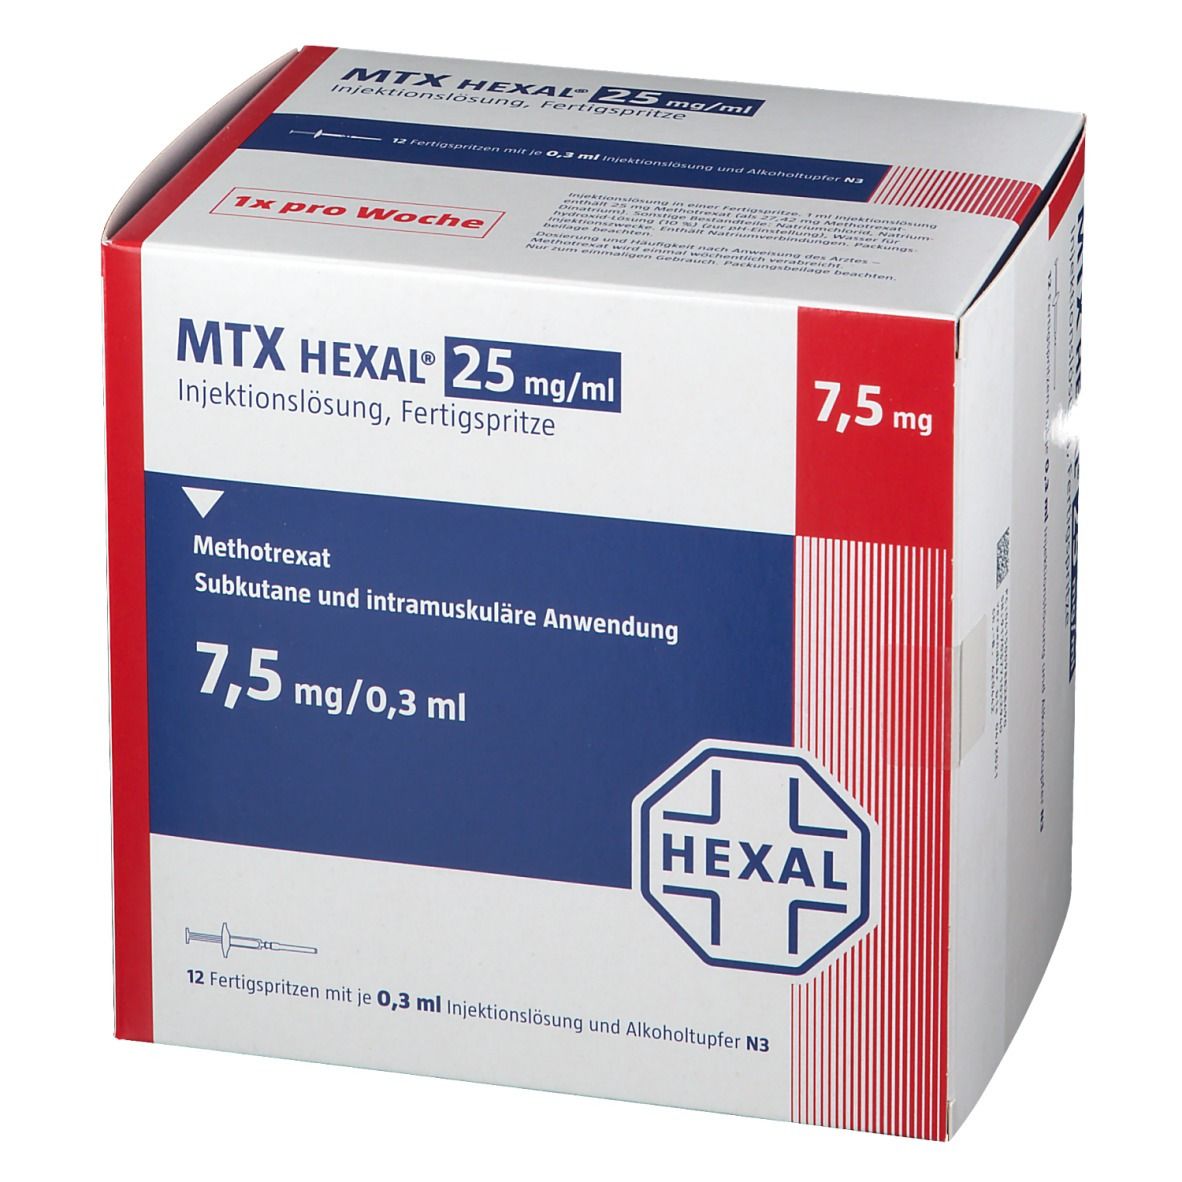 MTX HEXAL® 25 mg/ml 7,5 mg